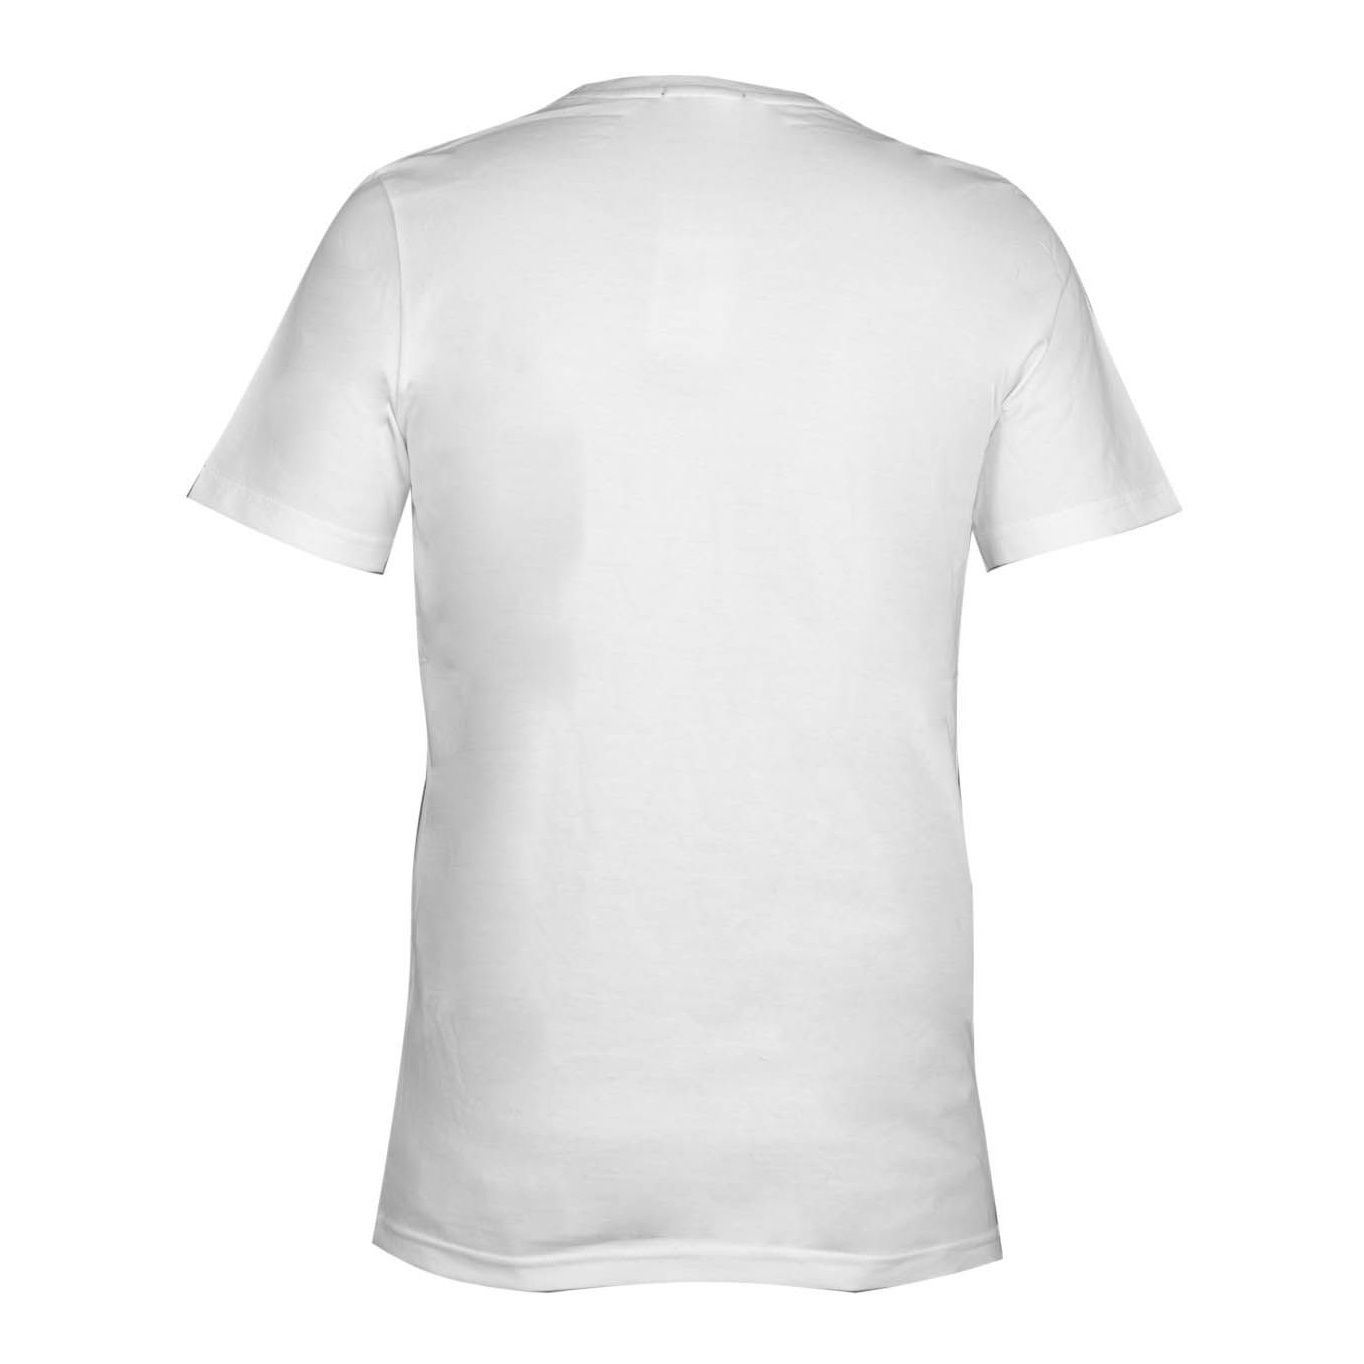 تی شرت مردانه مدل plo کد 258-235